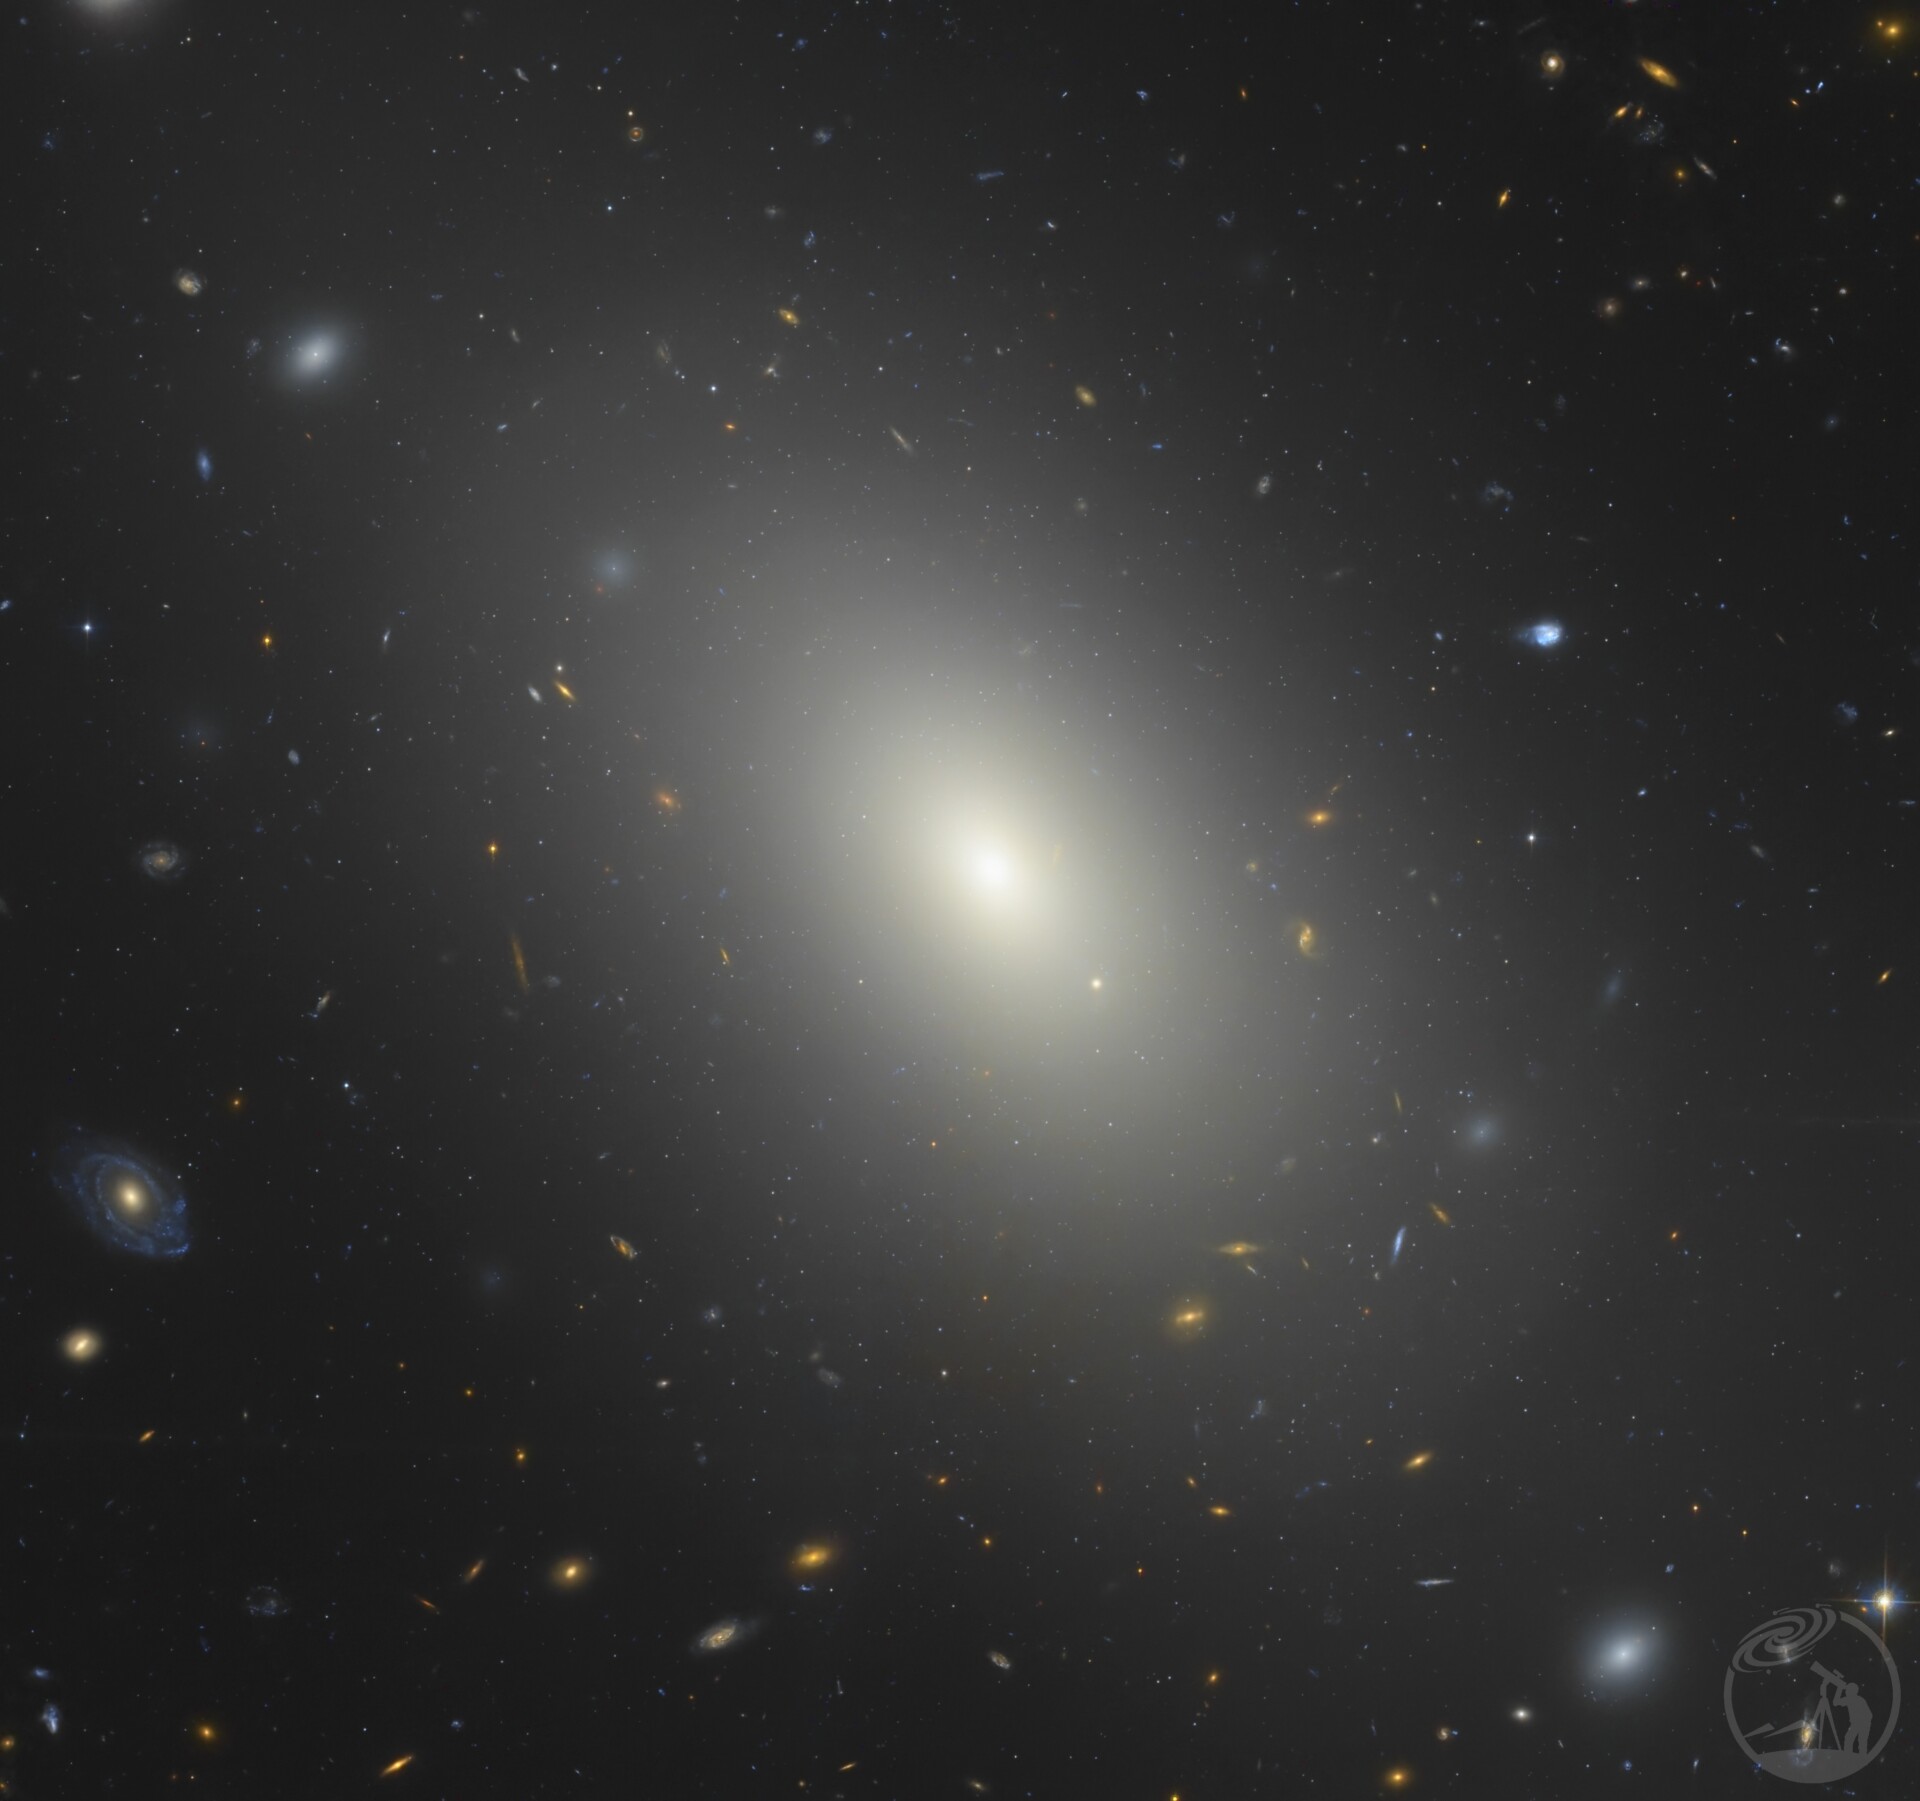 NGC1132